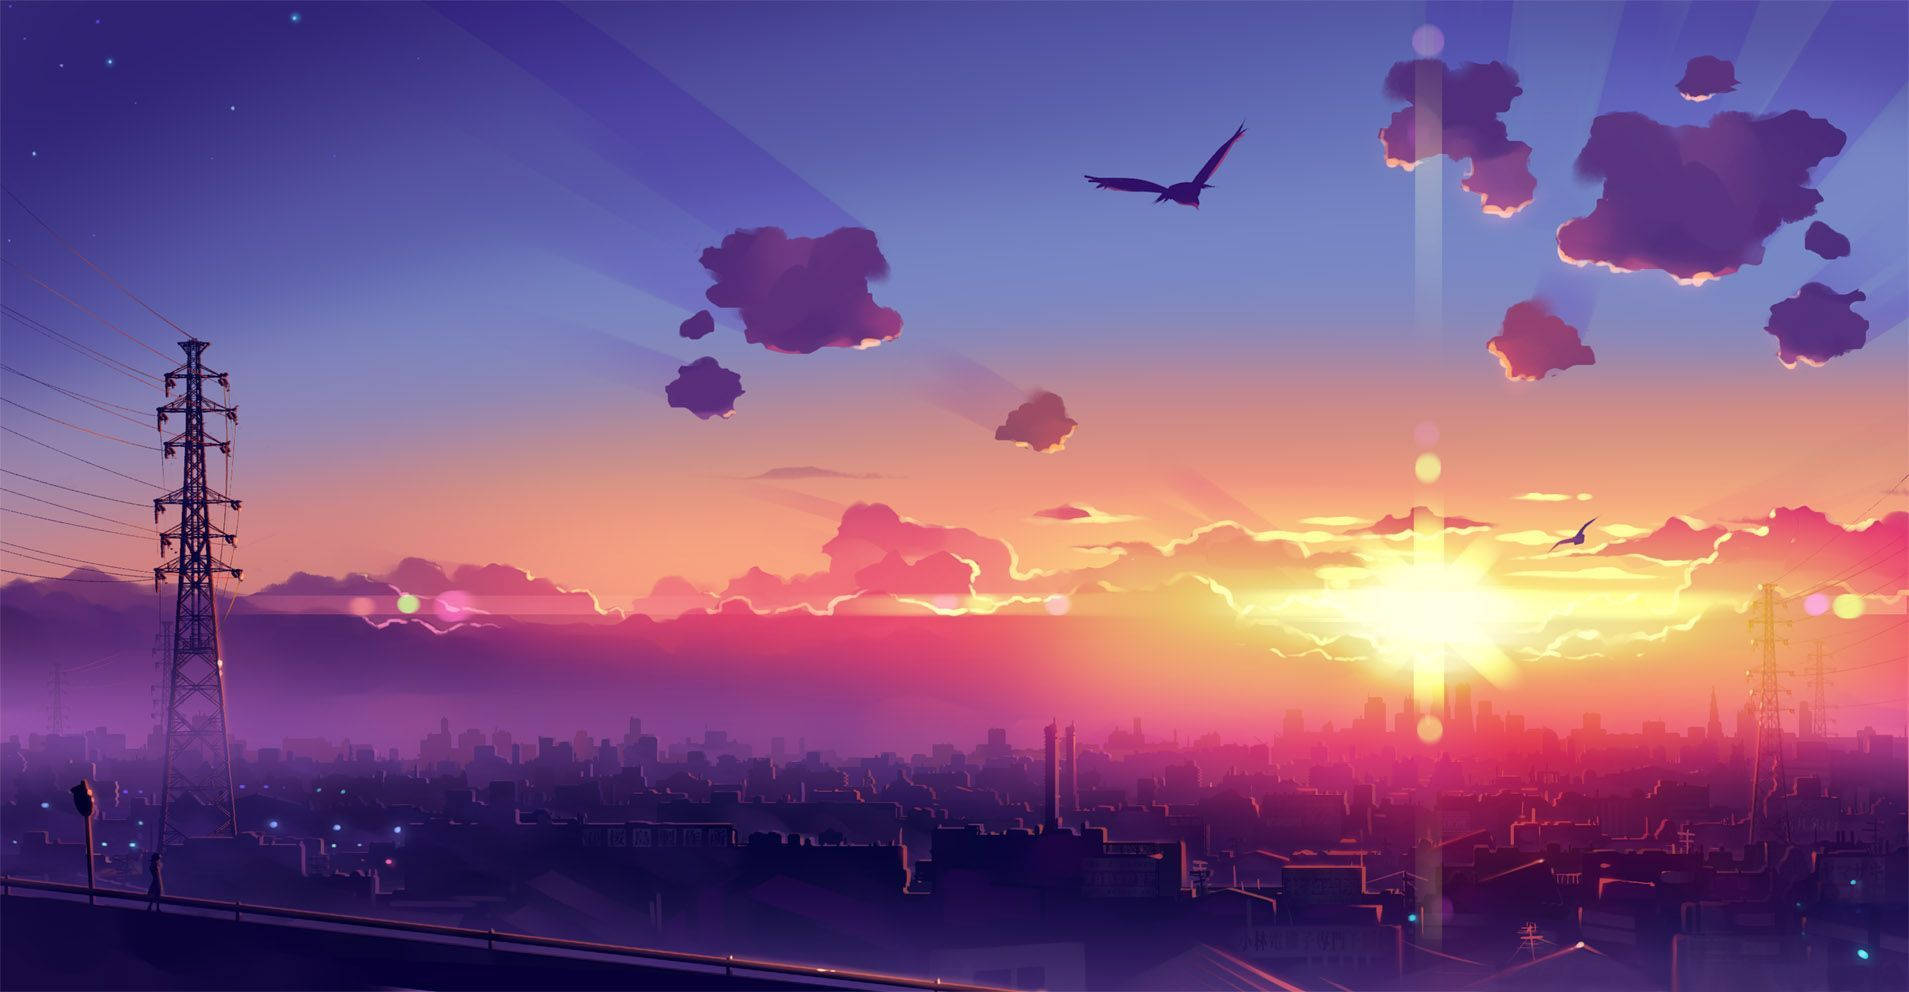 Beautiful Sunset Anime Scenery Wallpaper